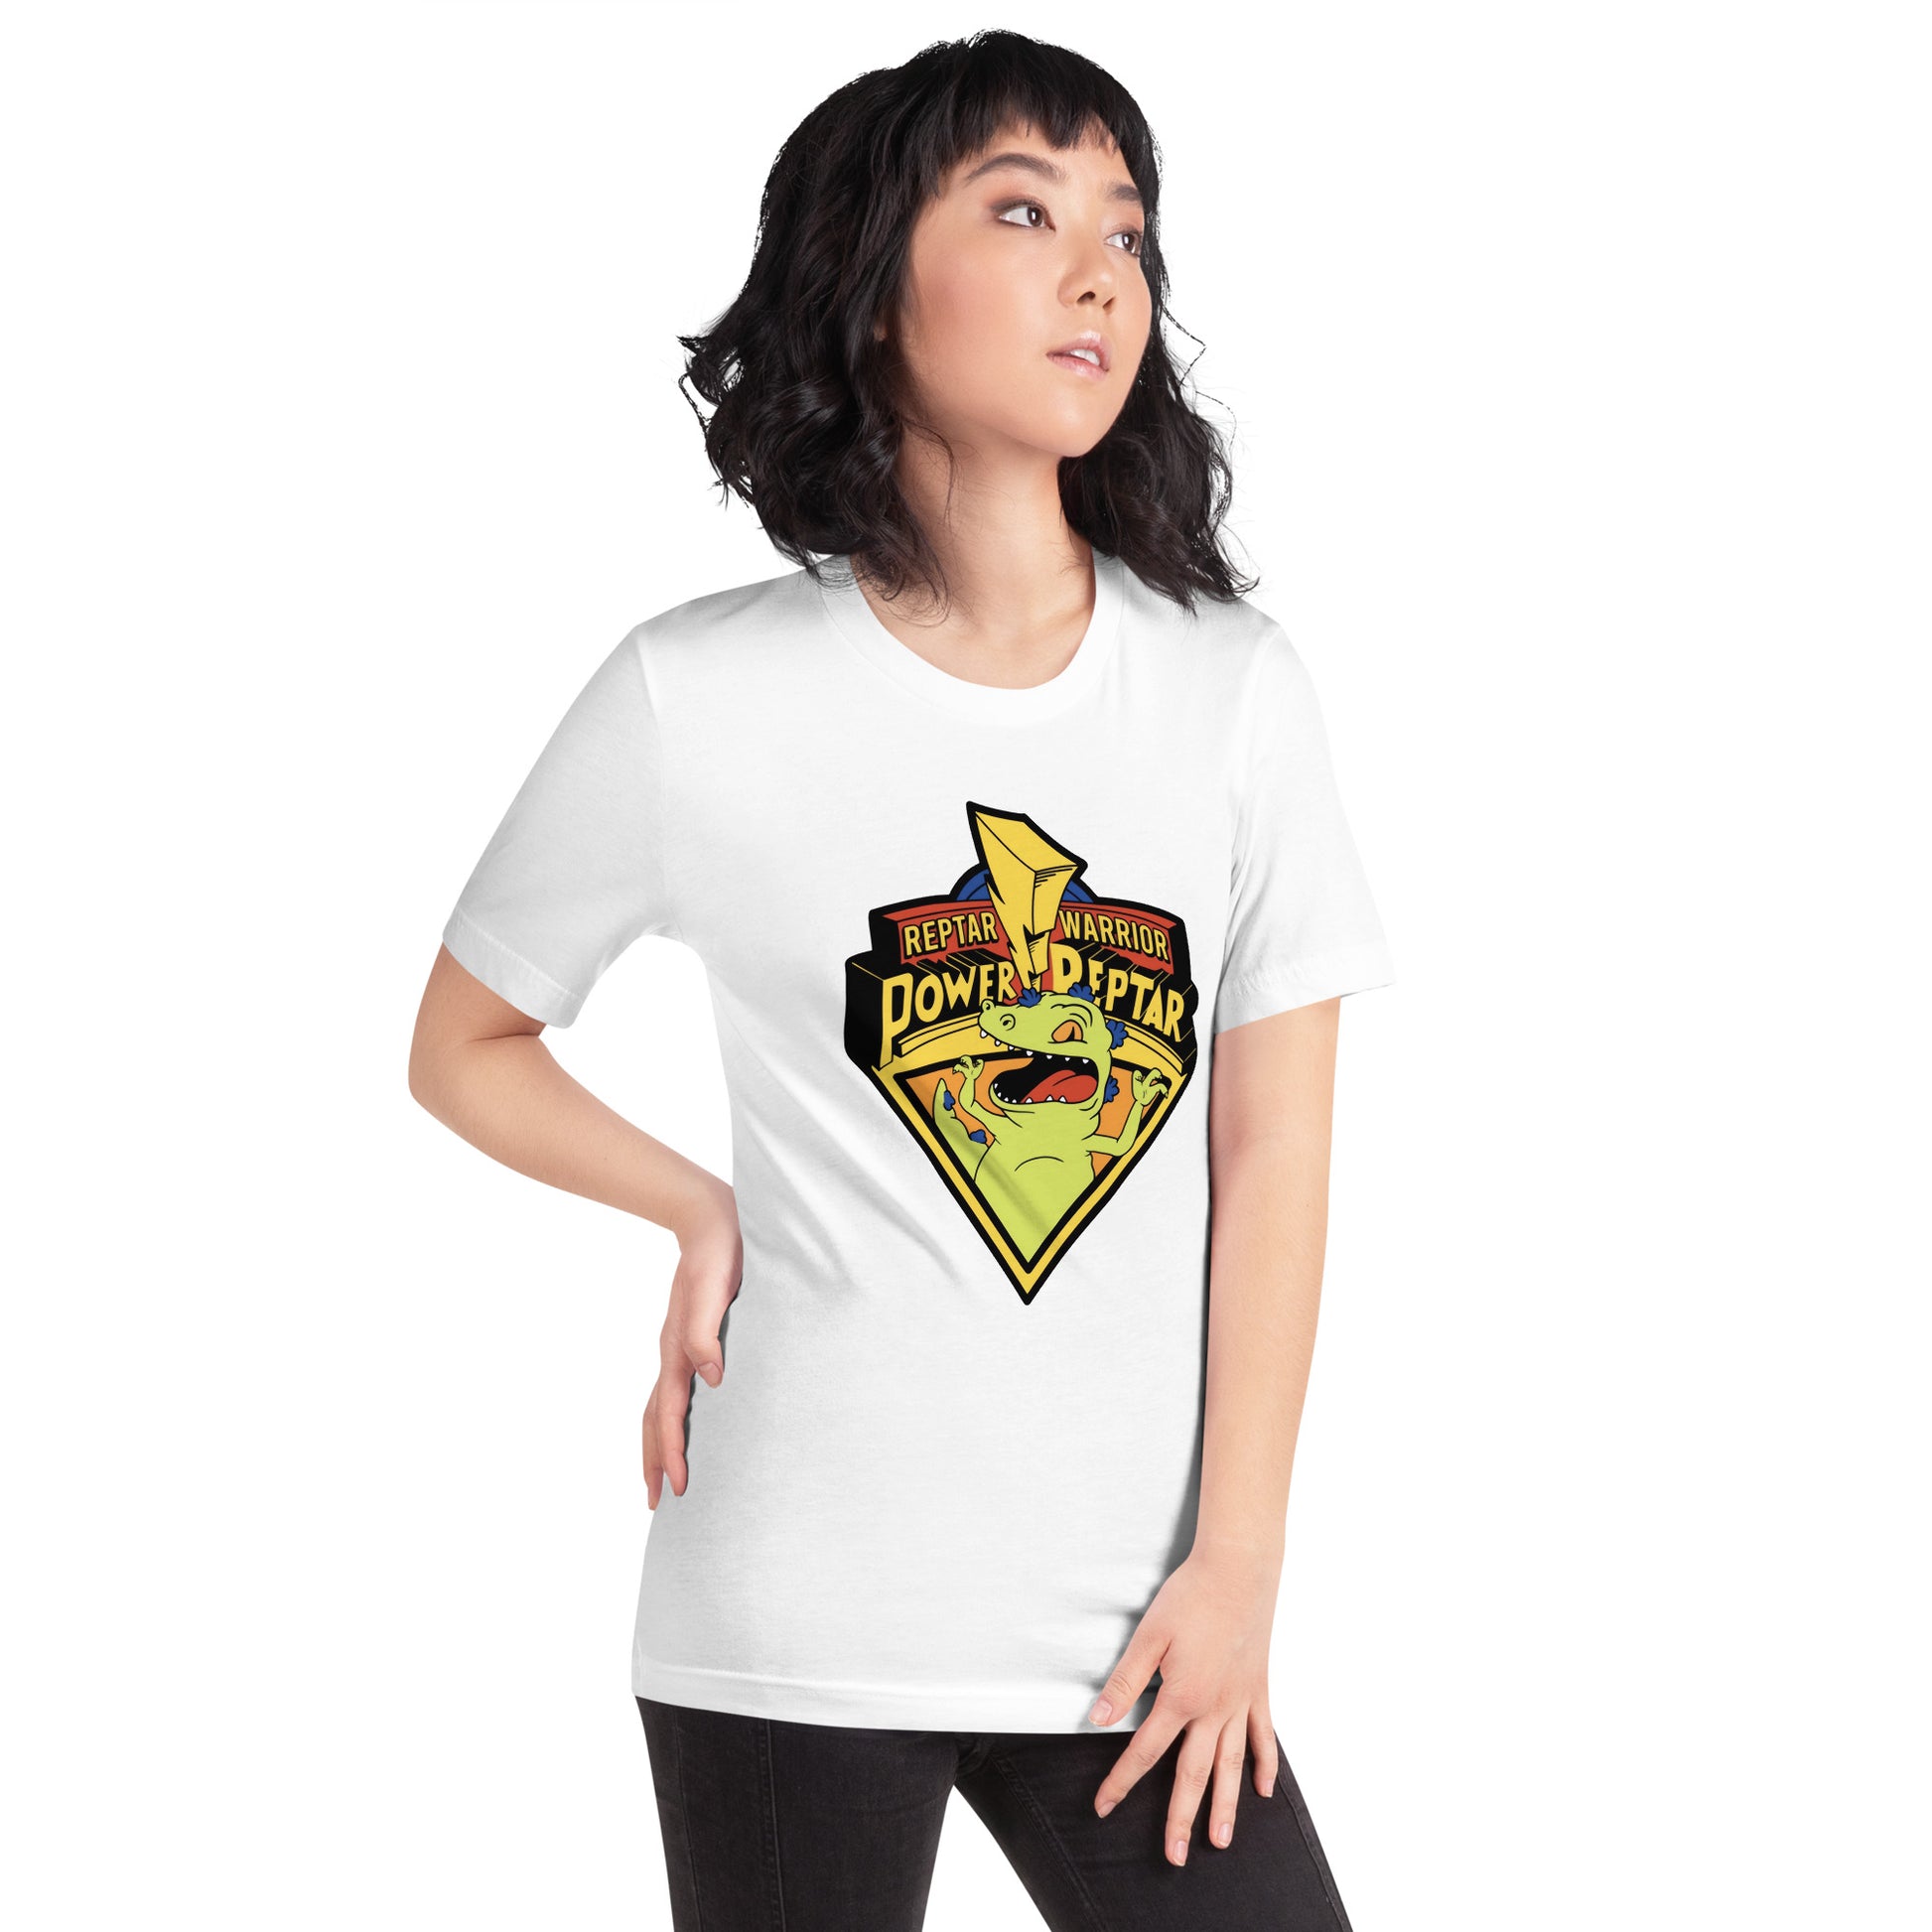 Camiseta Power Reptar, Disponible en la mejor tienda online para comprar tu merch favorita, la mejor Calidad, compra Ahora en Superstar! 